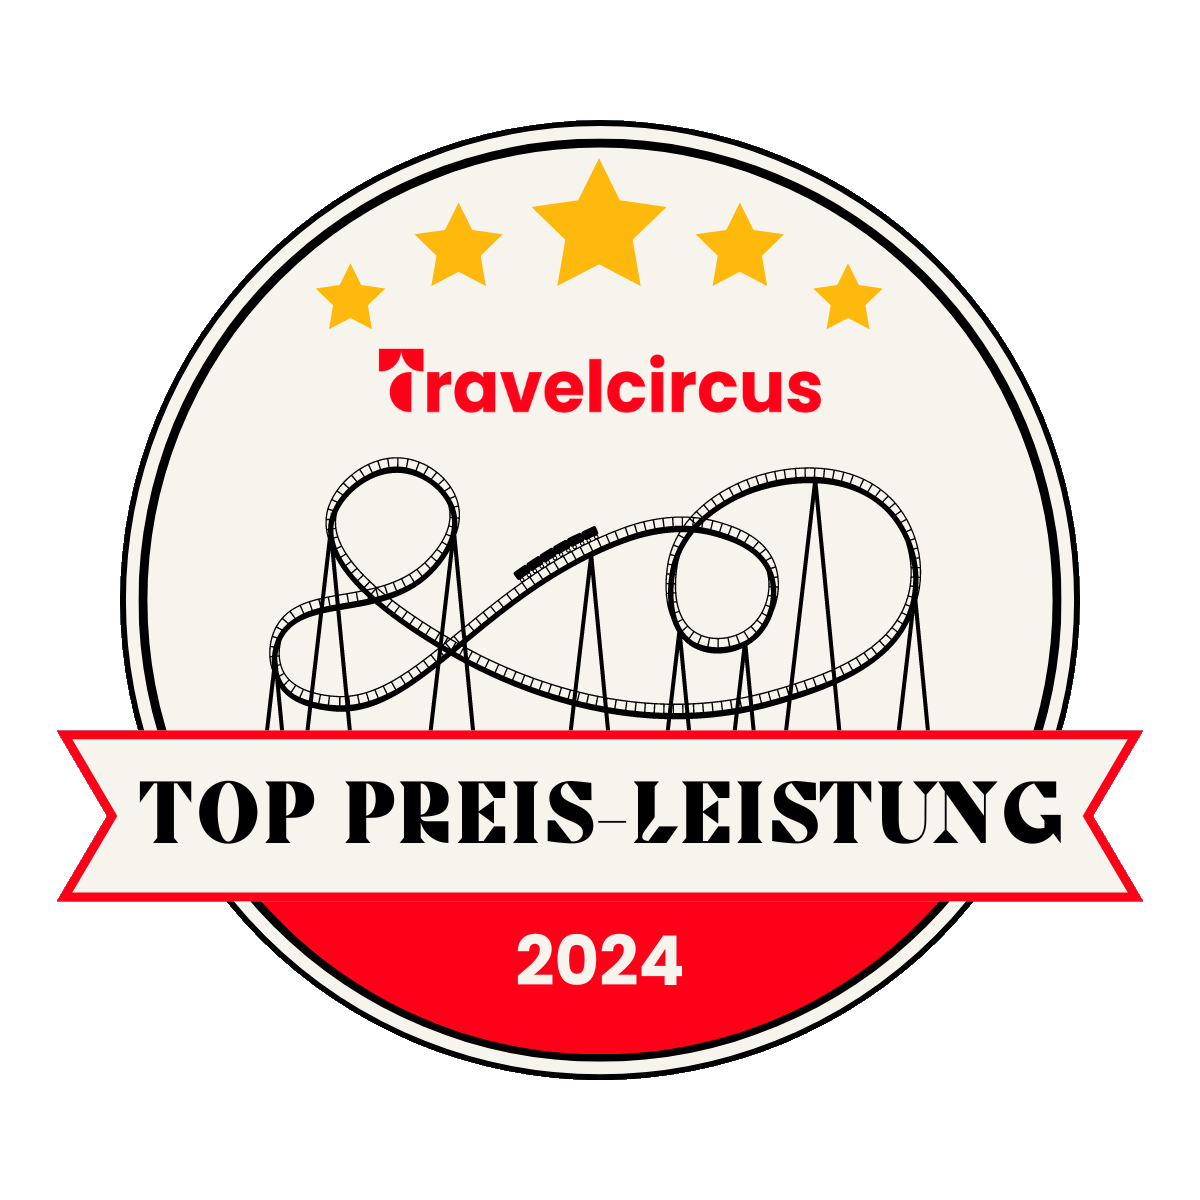 Travel Circus Top Preis-Leistung 2024